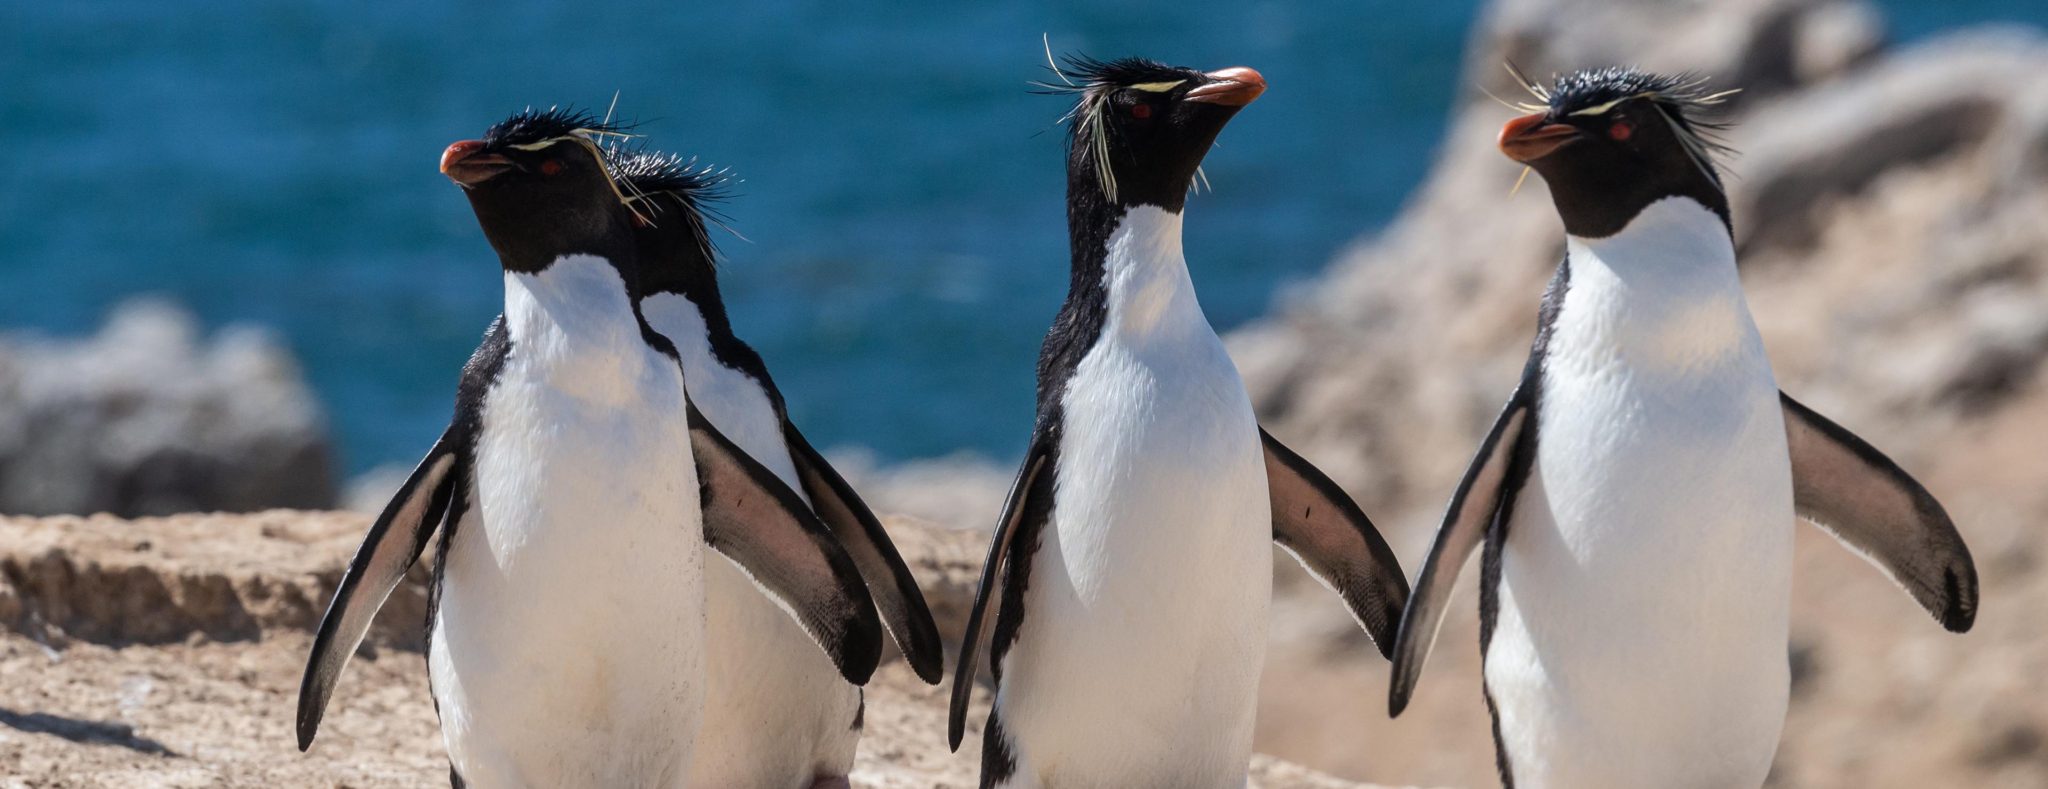 Falklandeilanden - Pinguïns 2